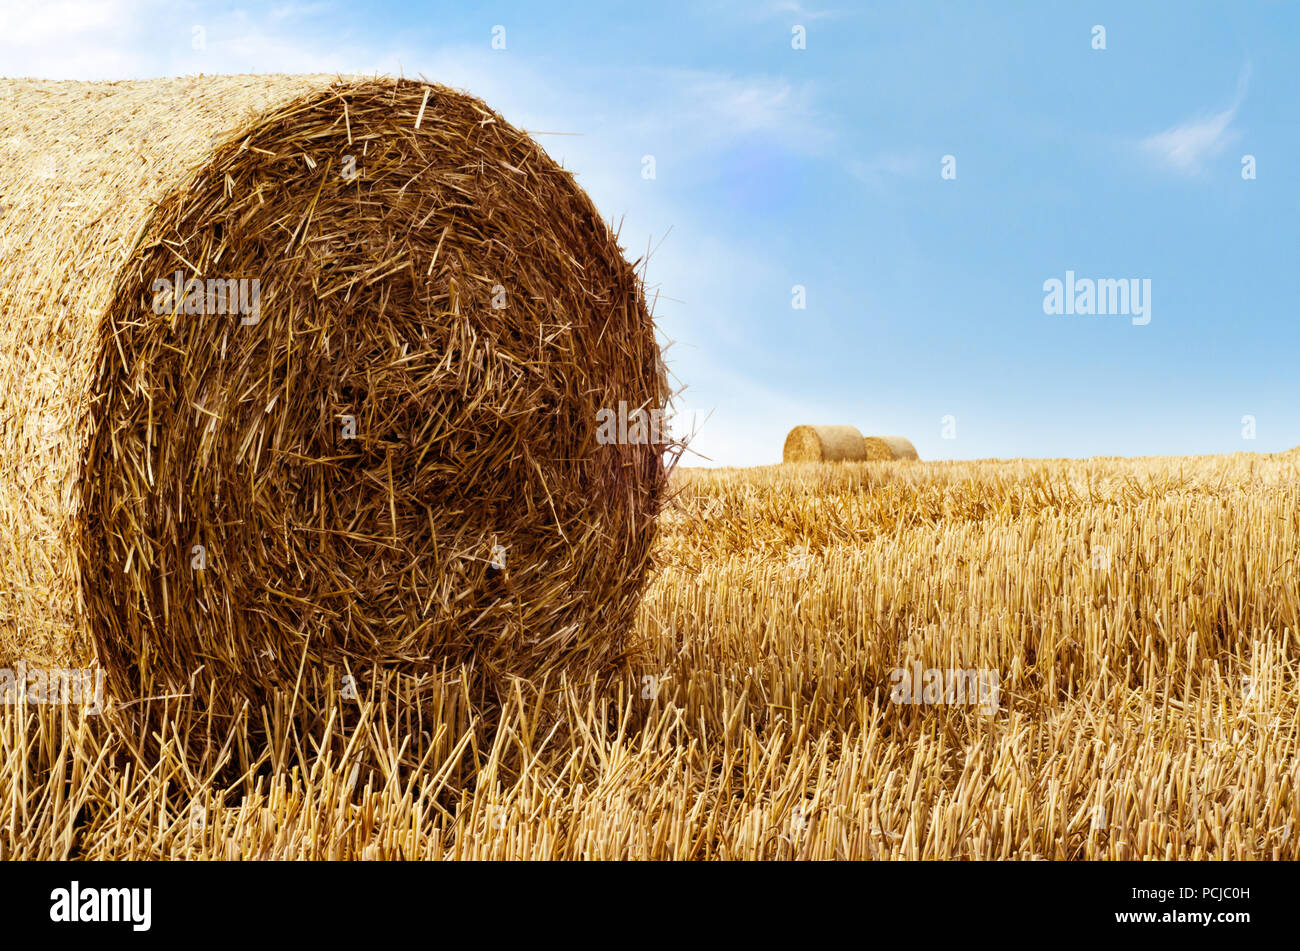 Golden Strohballen im Spätsommer fotografiert. Landwirtschaftliche Landschaft gegen strahlend blauen Himmel mit dünnen weißen Wolke. Stockfoto